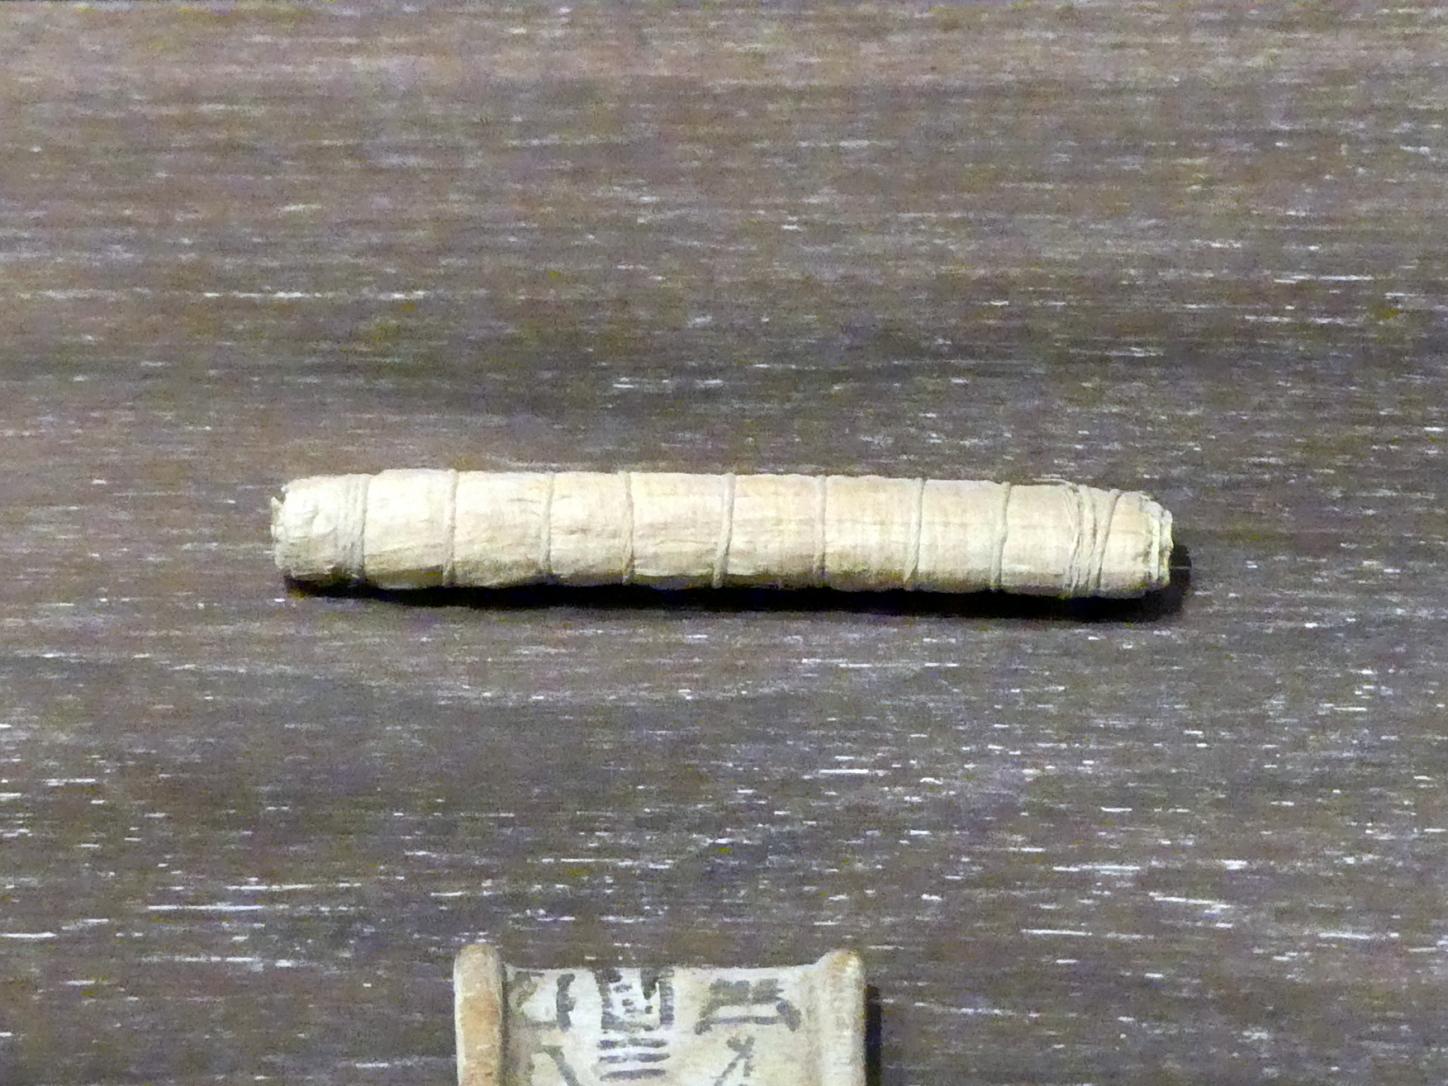 Verschnürte Papyrusrolle als Amulett, Ptolemäische Zeit, 400 v. Chr. - 1 n. Chr., 200 - 100 v. Chr.